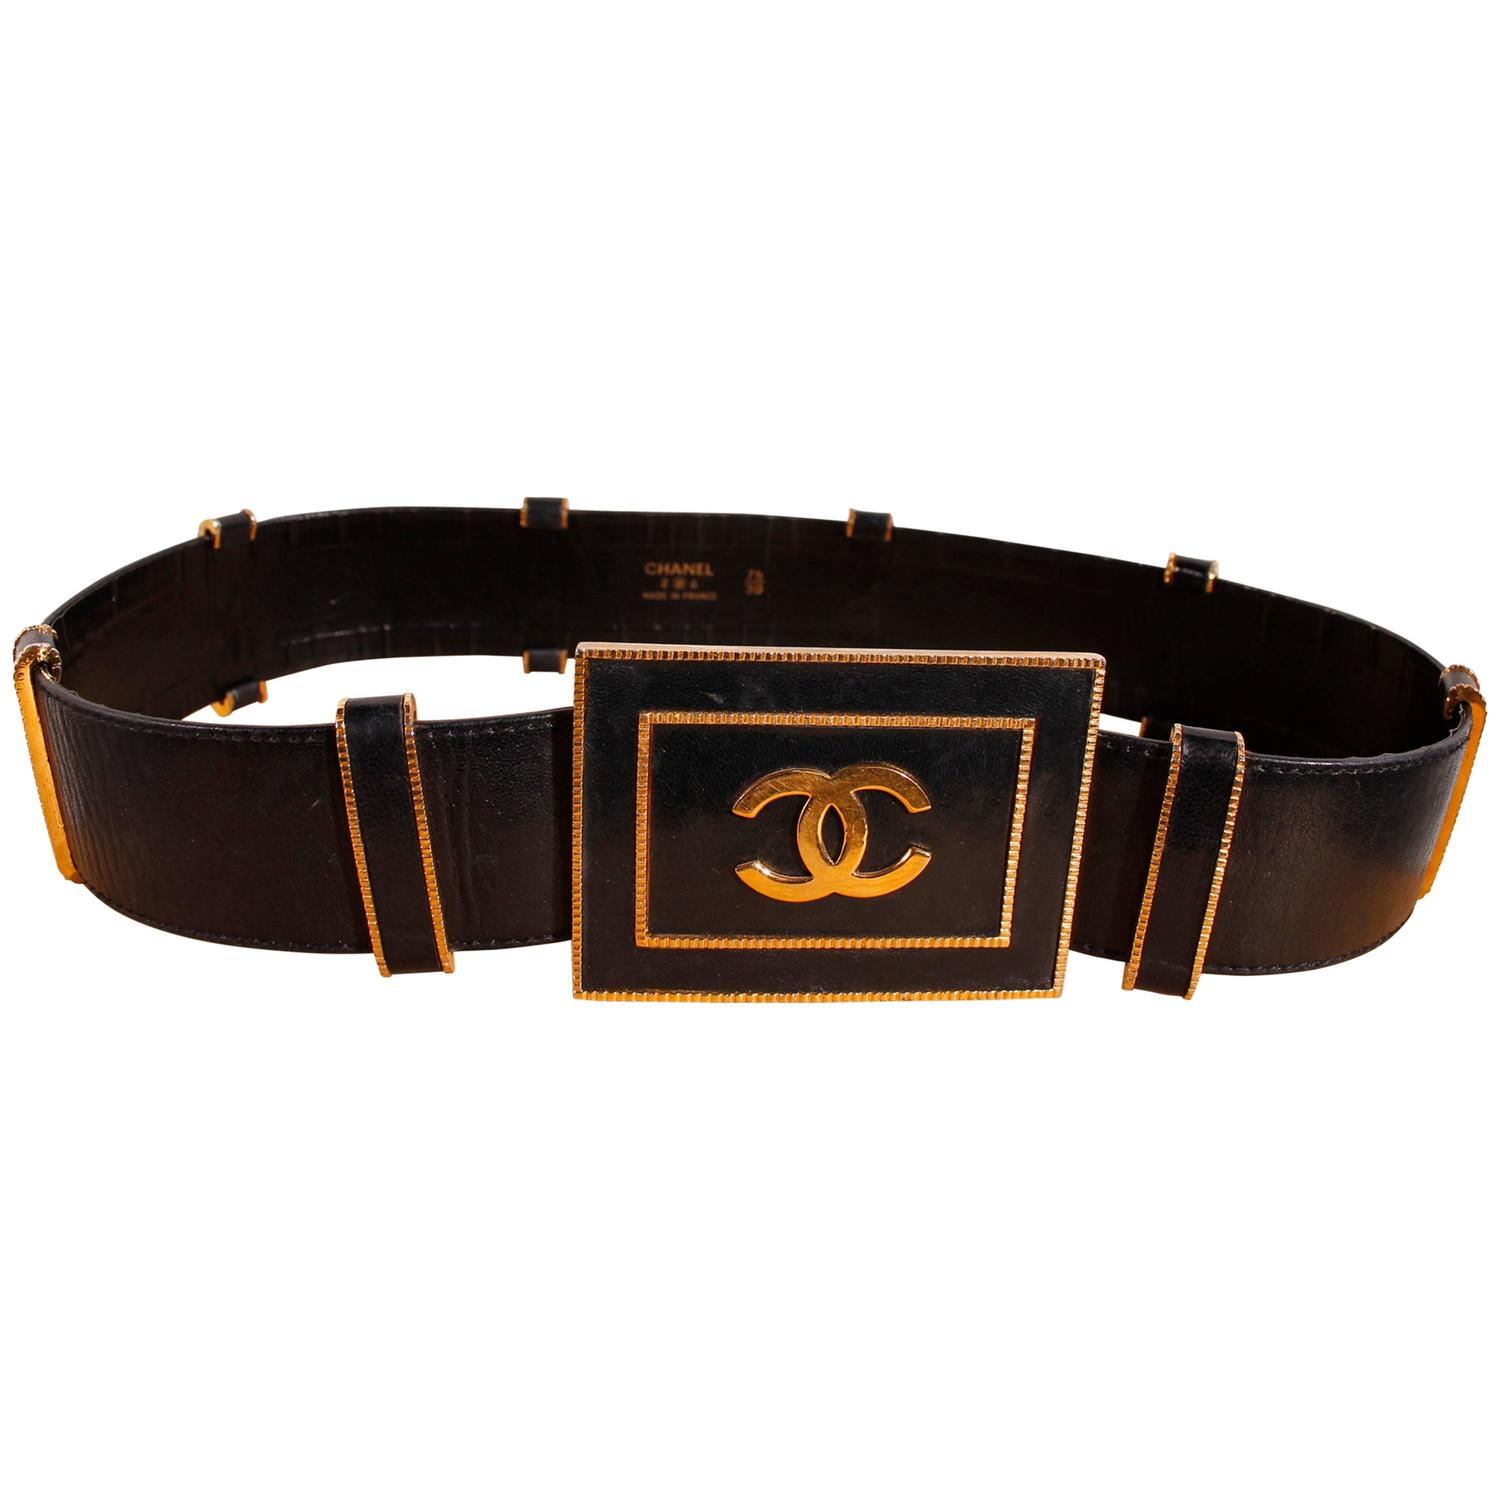 80's Vintage Chanel Belt - Black Leather at 1stdibs